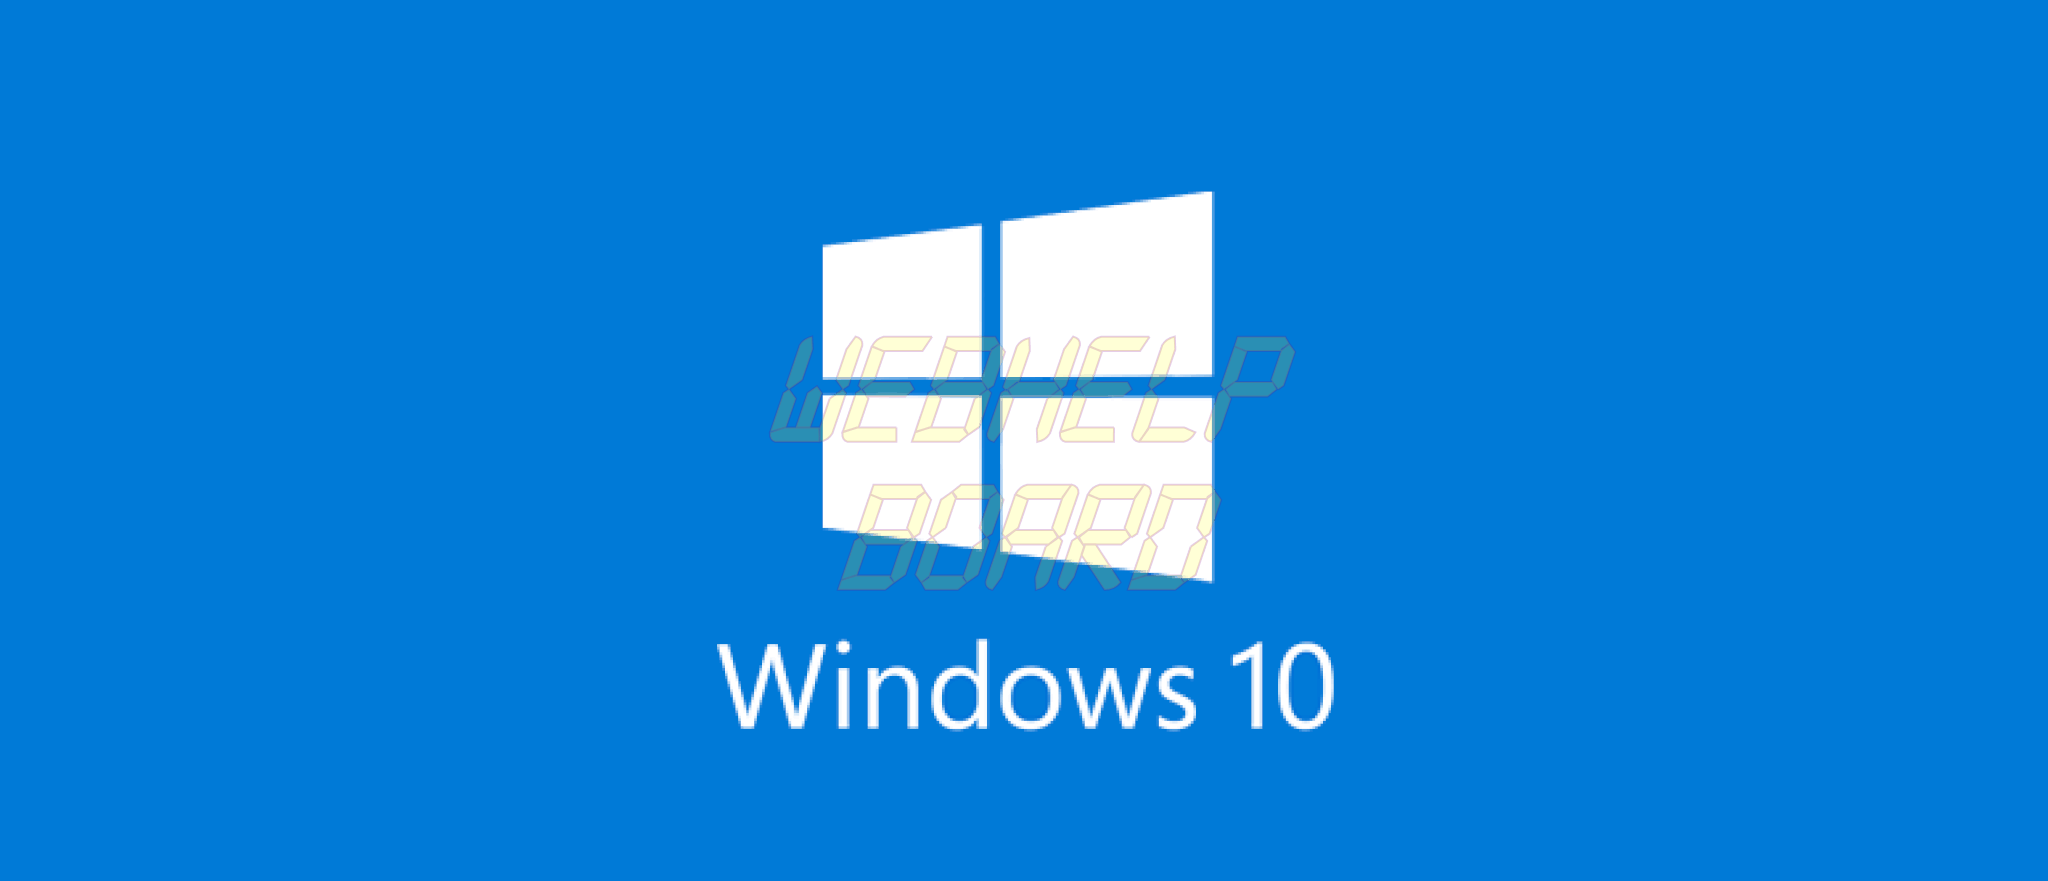 windows 10 logo 1 - Confira soluções para problemas na instalação de atualizações do Windows 10